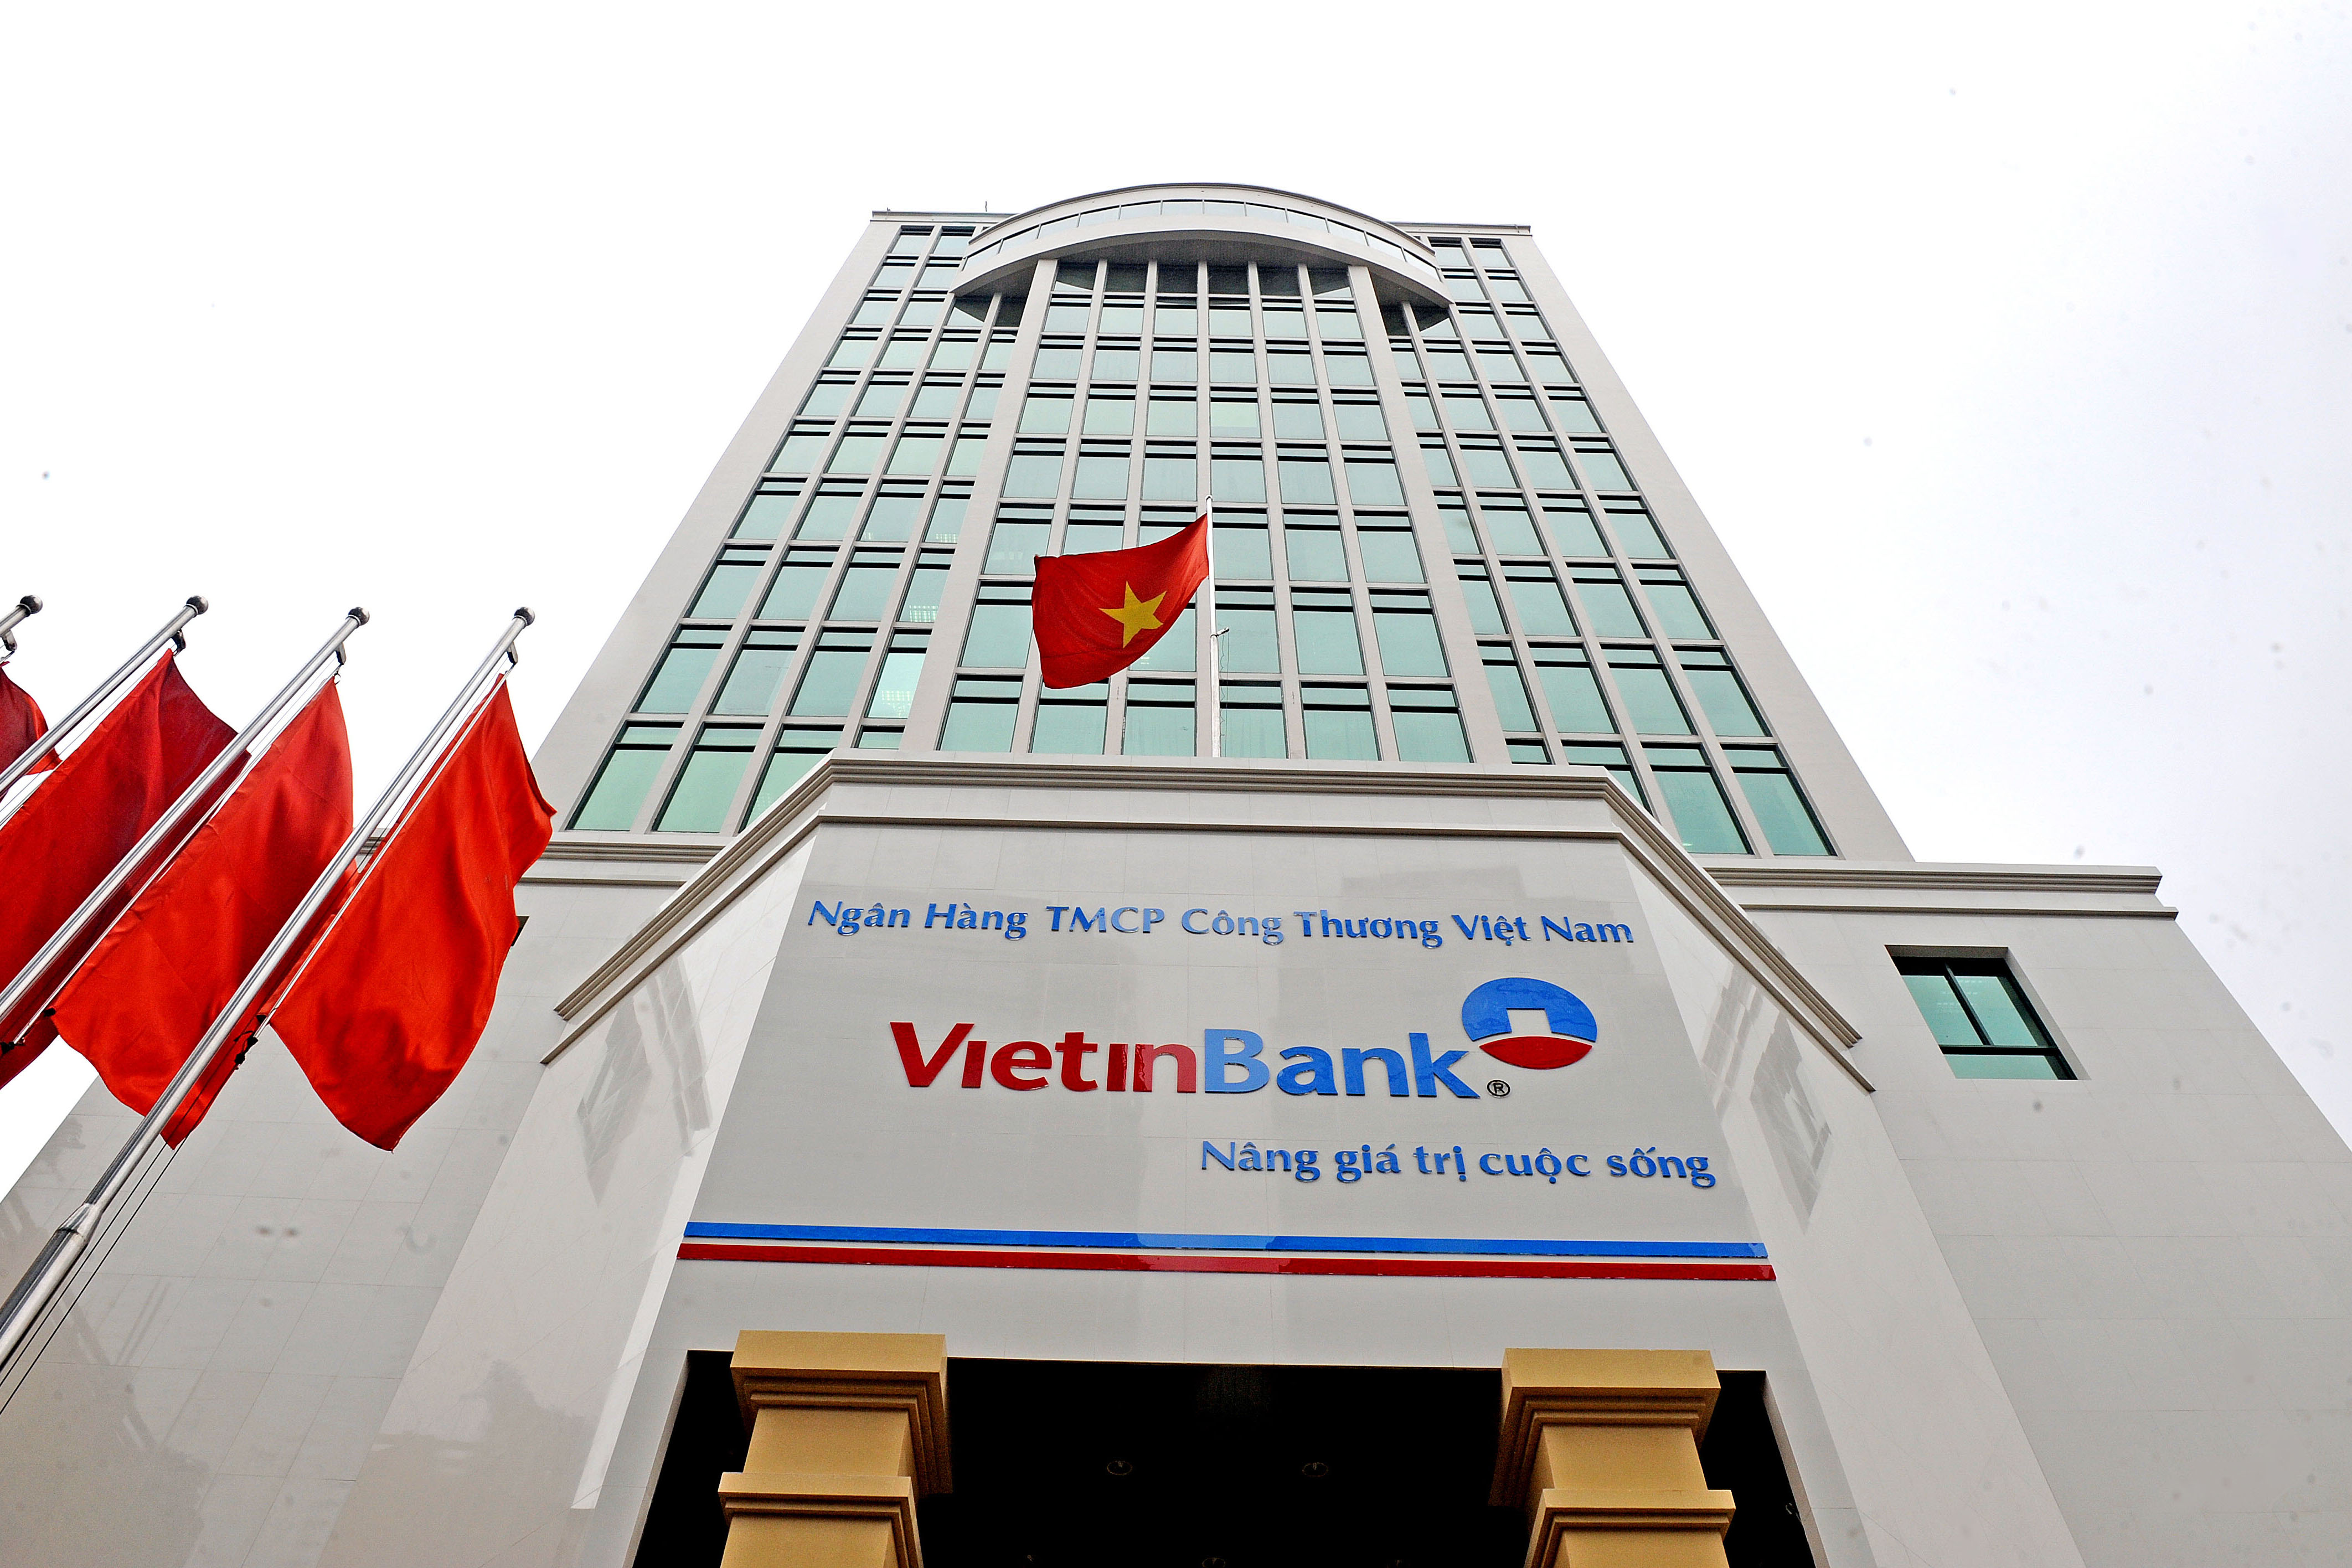 Vietinbank – Ha Noi